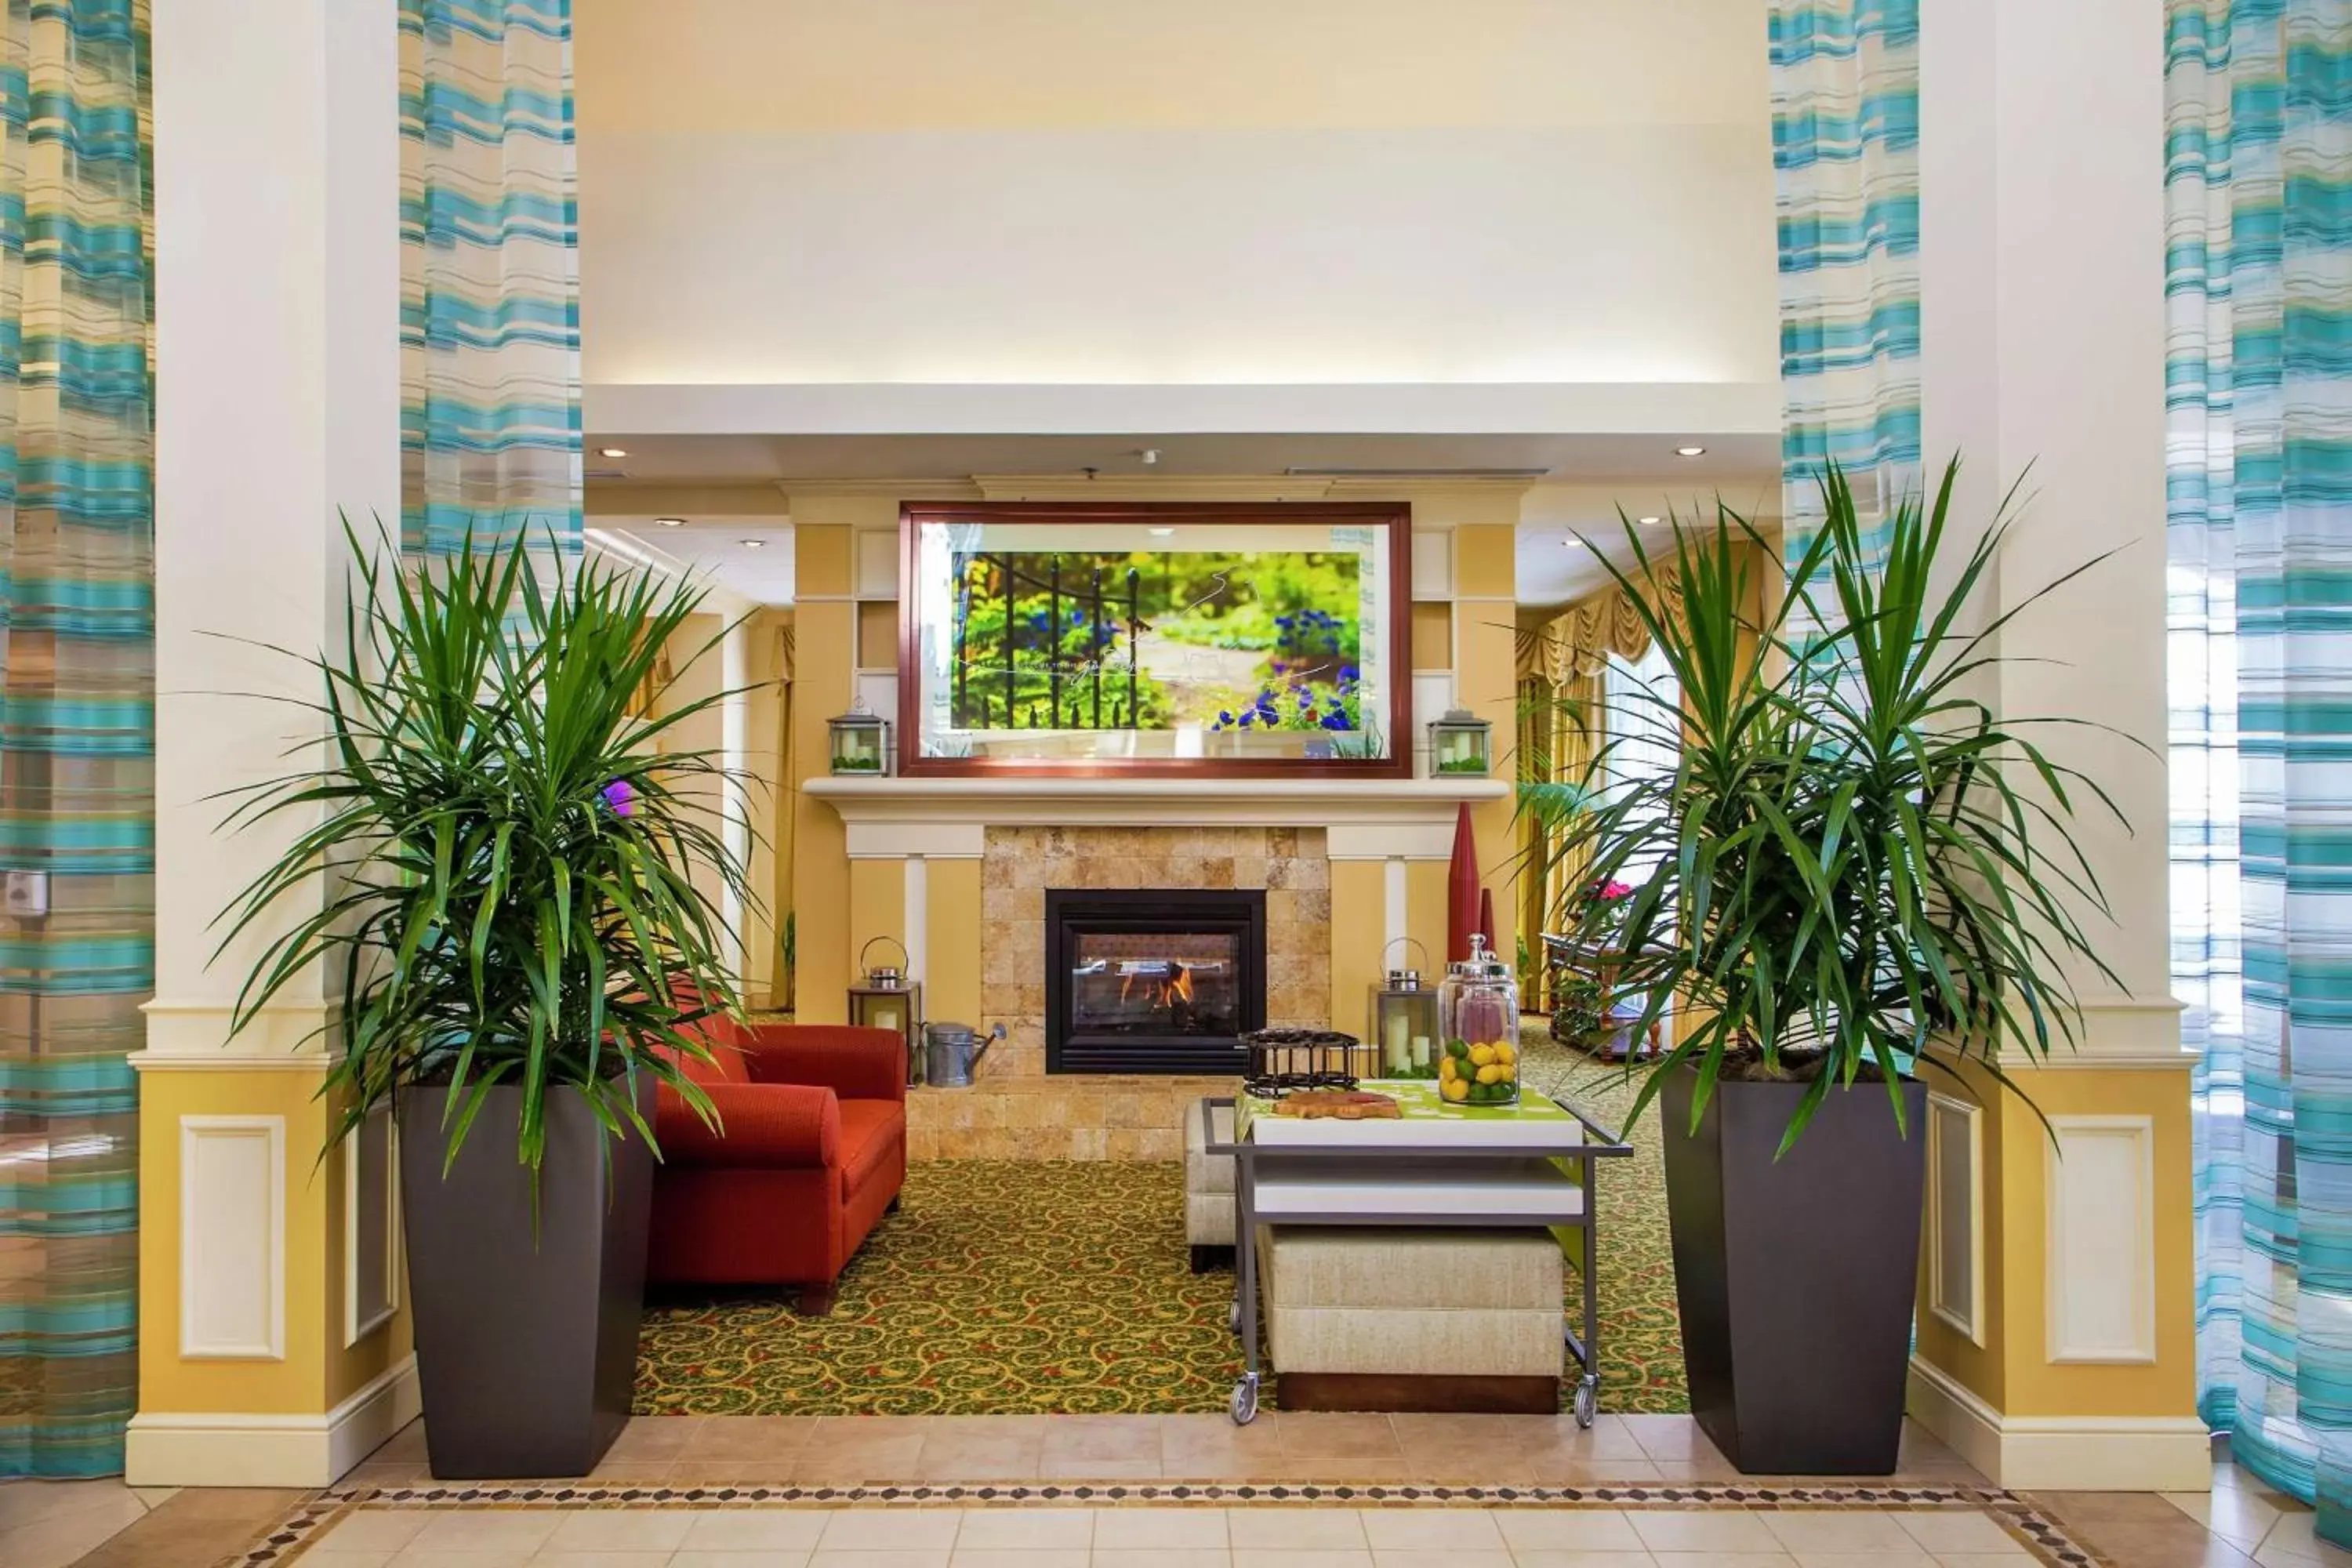 Lobby or reception, Lobby/Reception in Hilton Garden Inn Outer Banks/Kitty Hawk